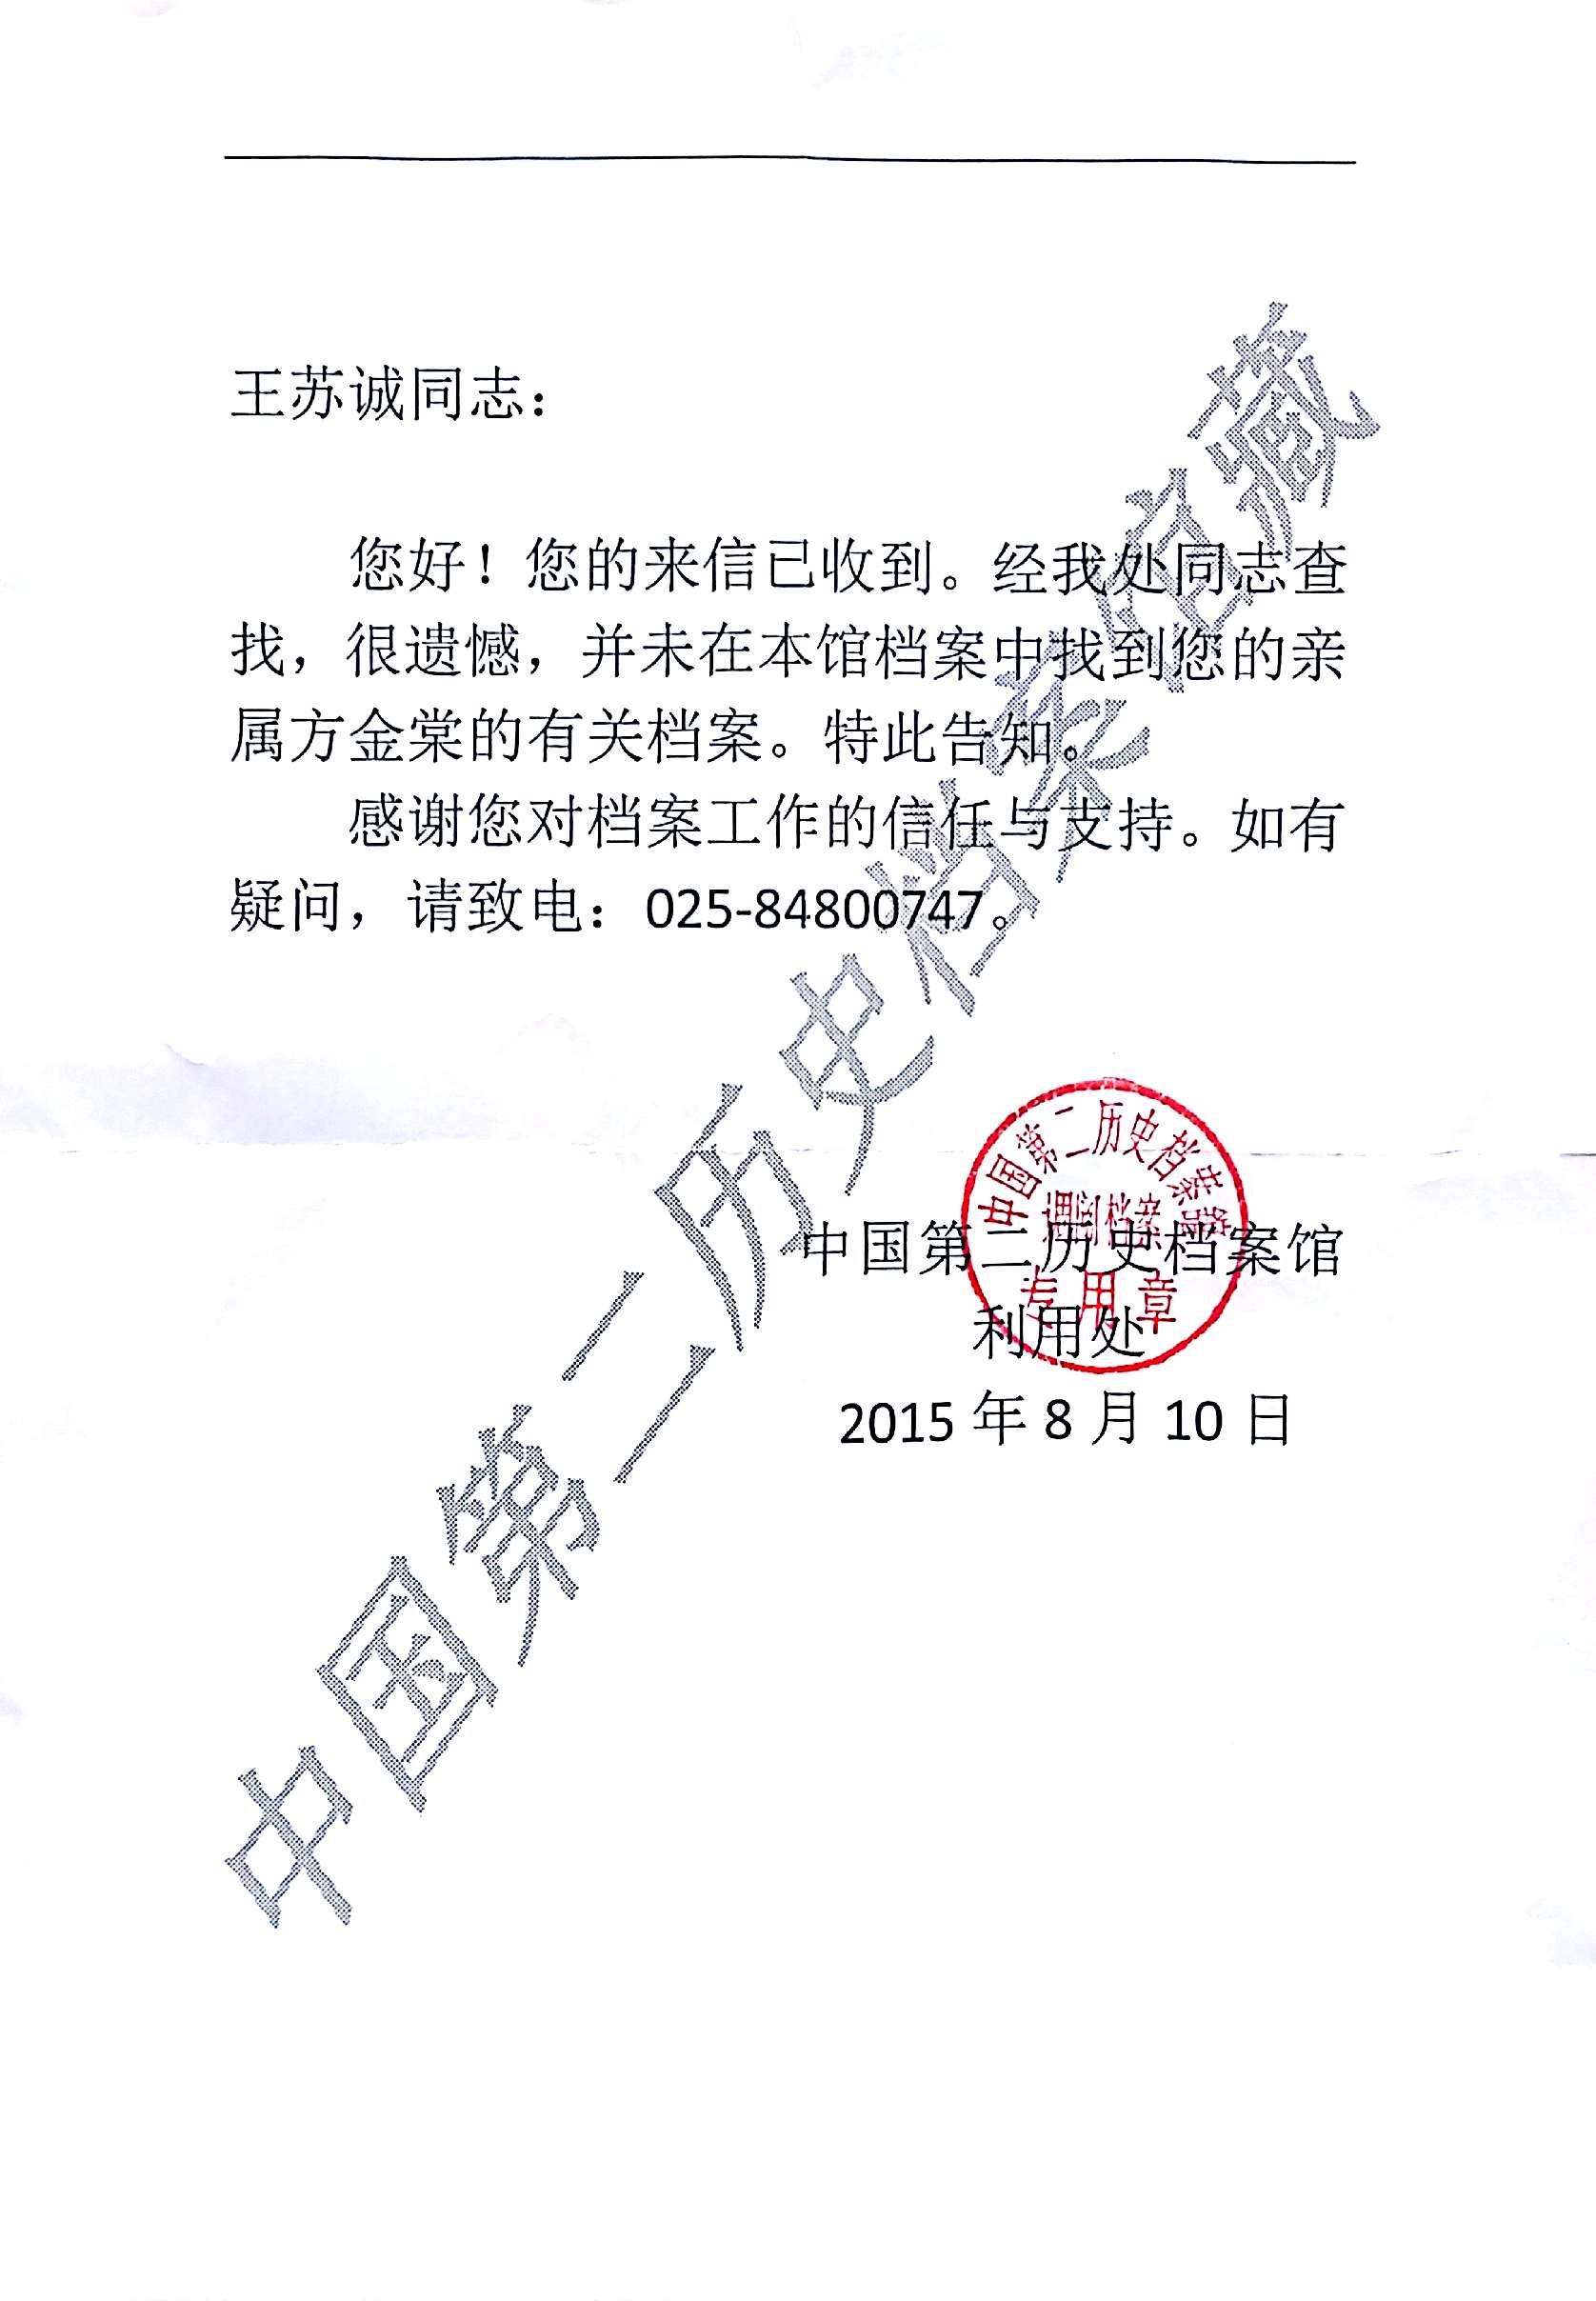 2015年8月10日中国第二历史档案馆给母亲的回信.jpg